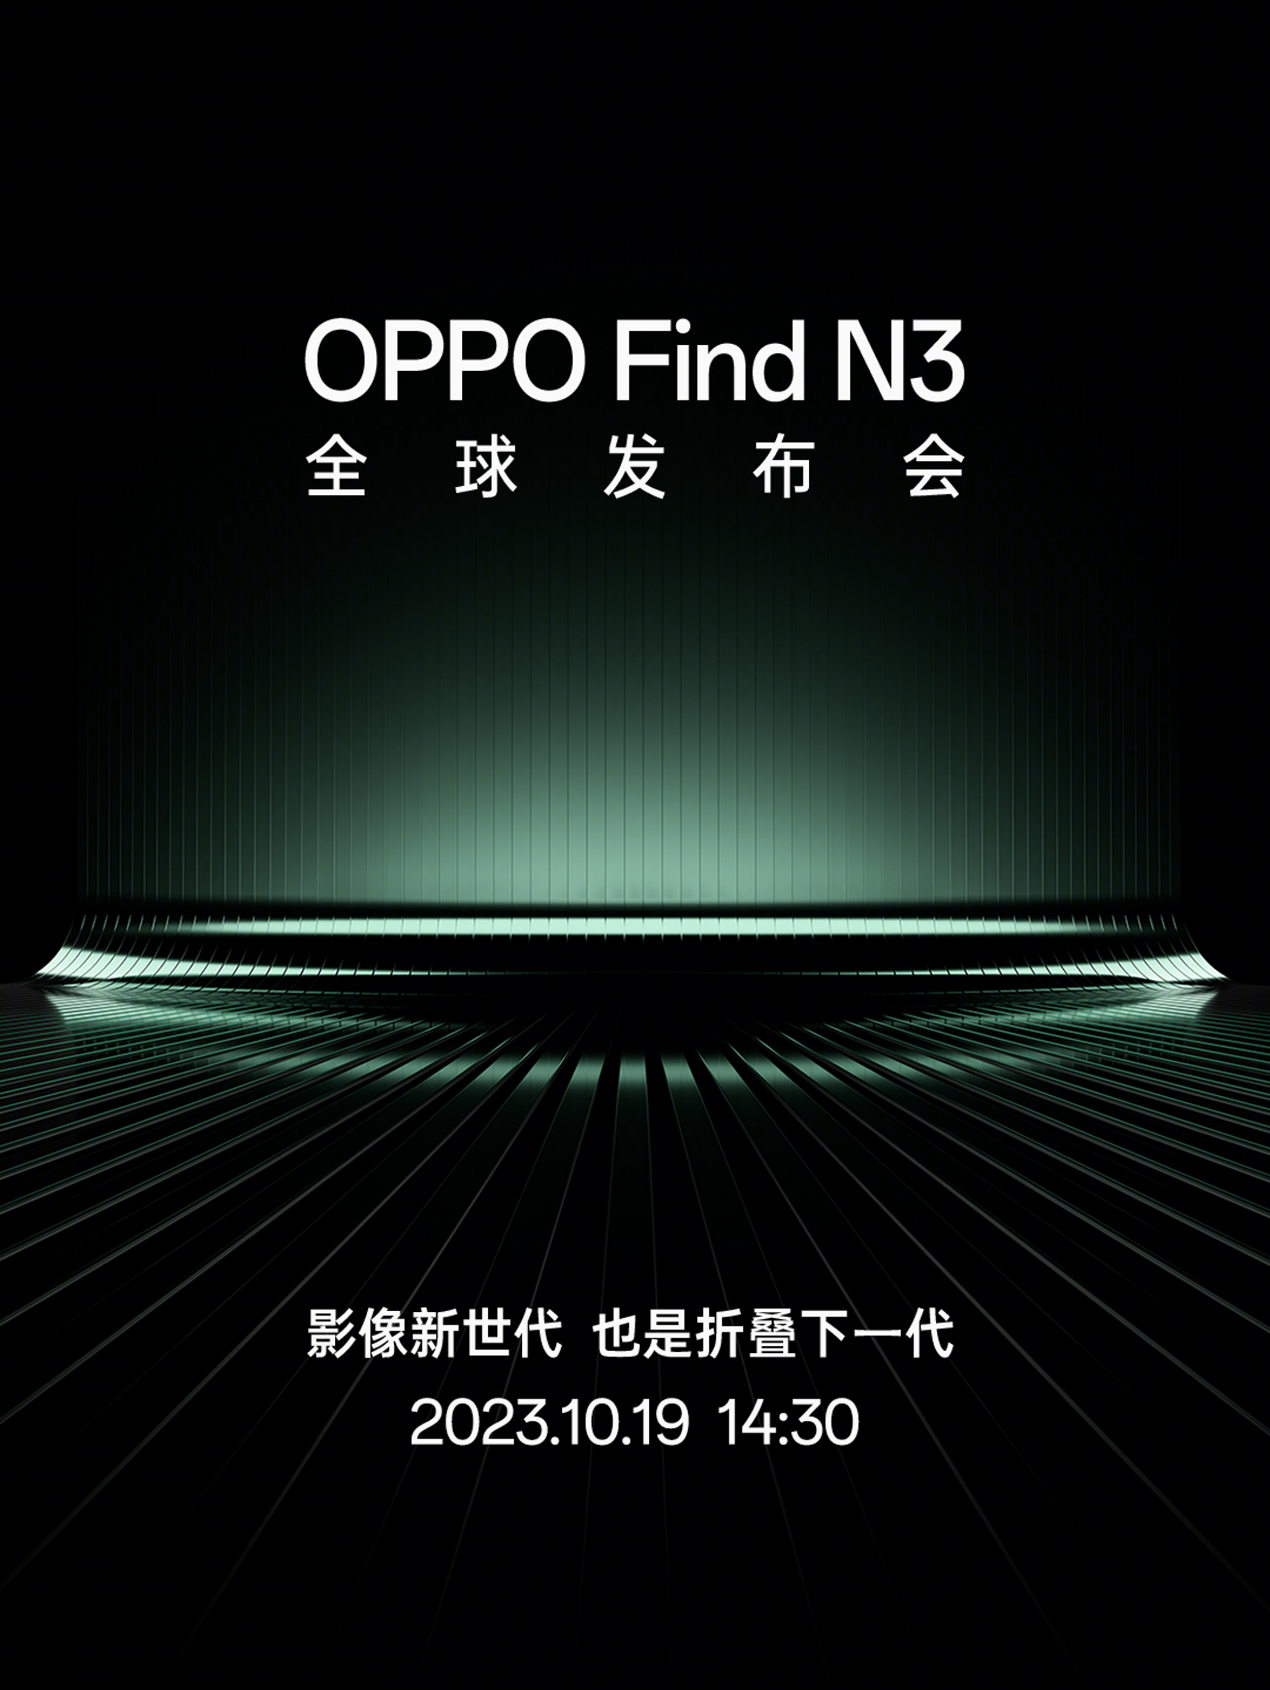 万物皆可锁！OPPO Find N3配备独立安全芯片，彻底杜绝隐私安全隐患